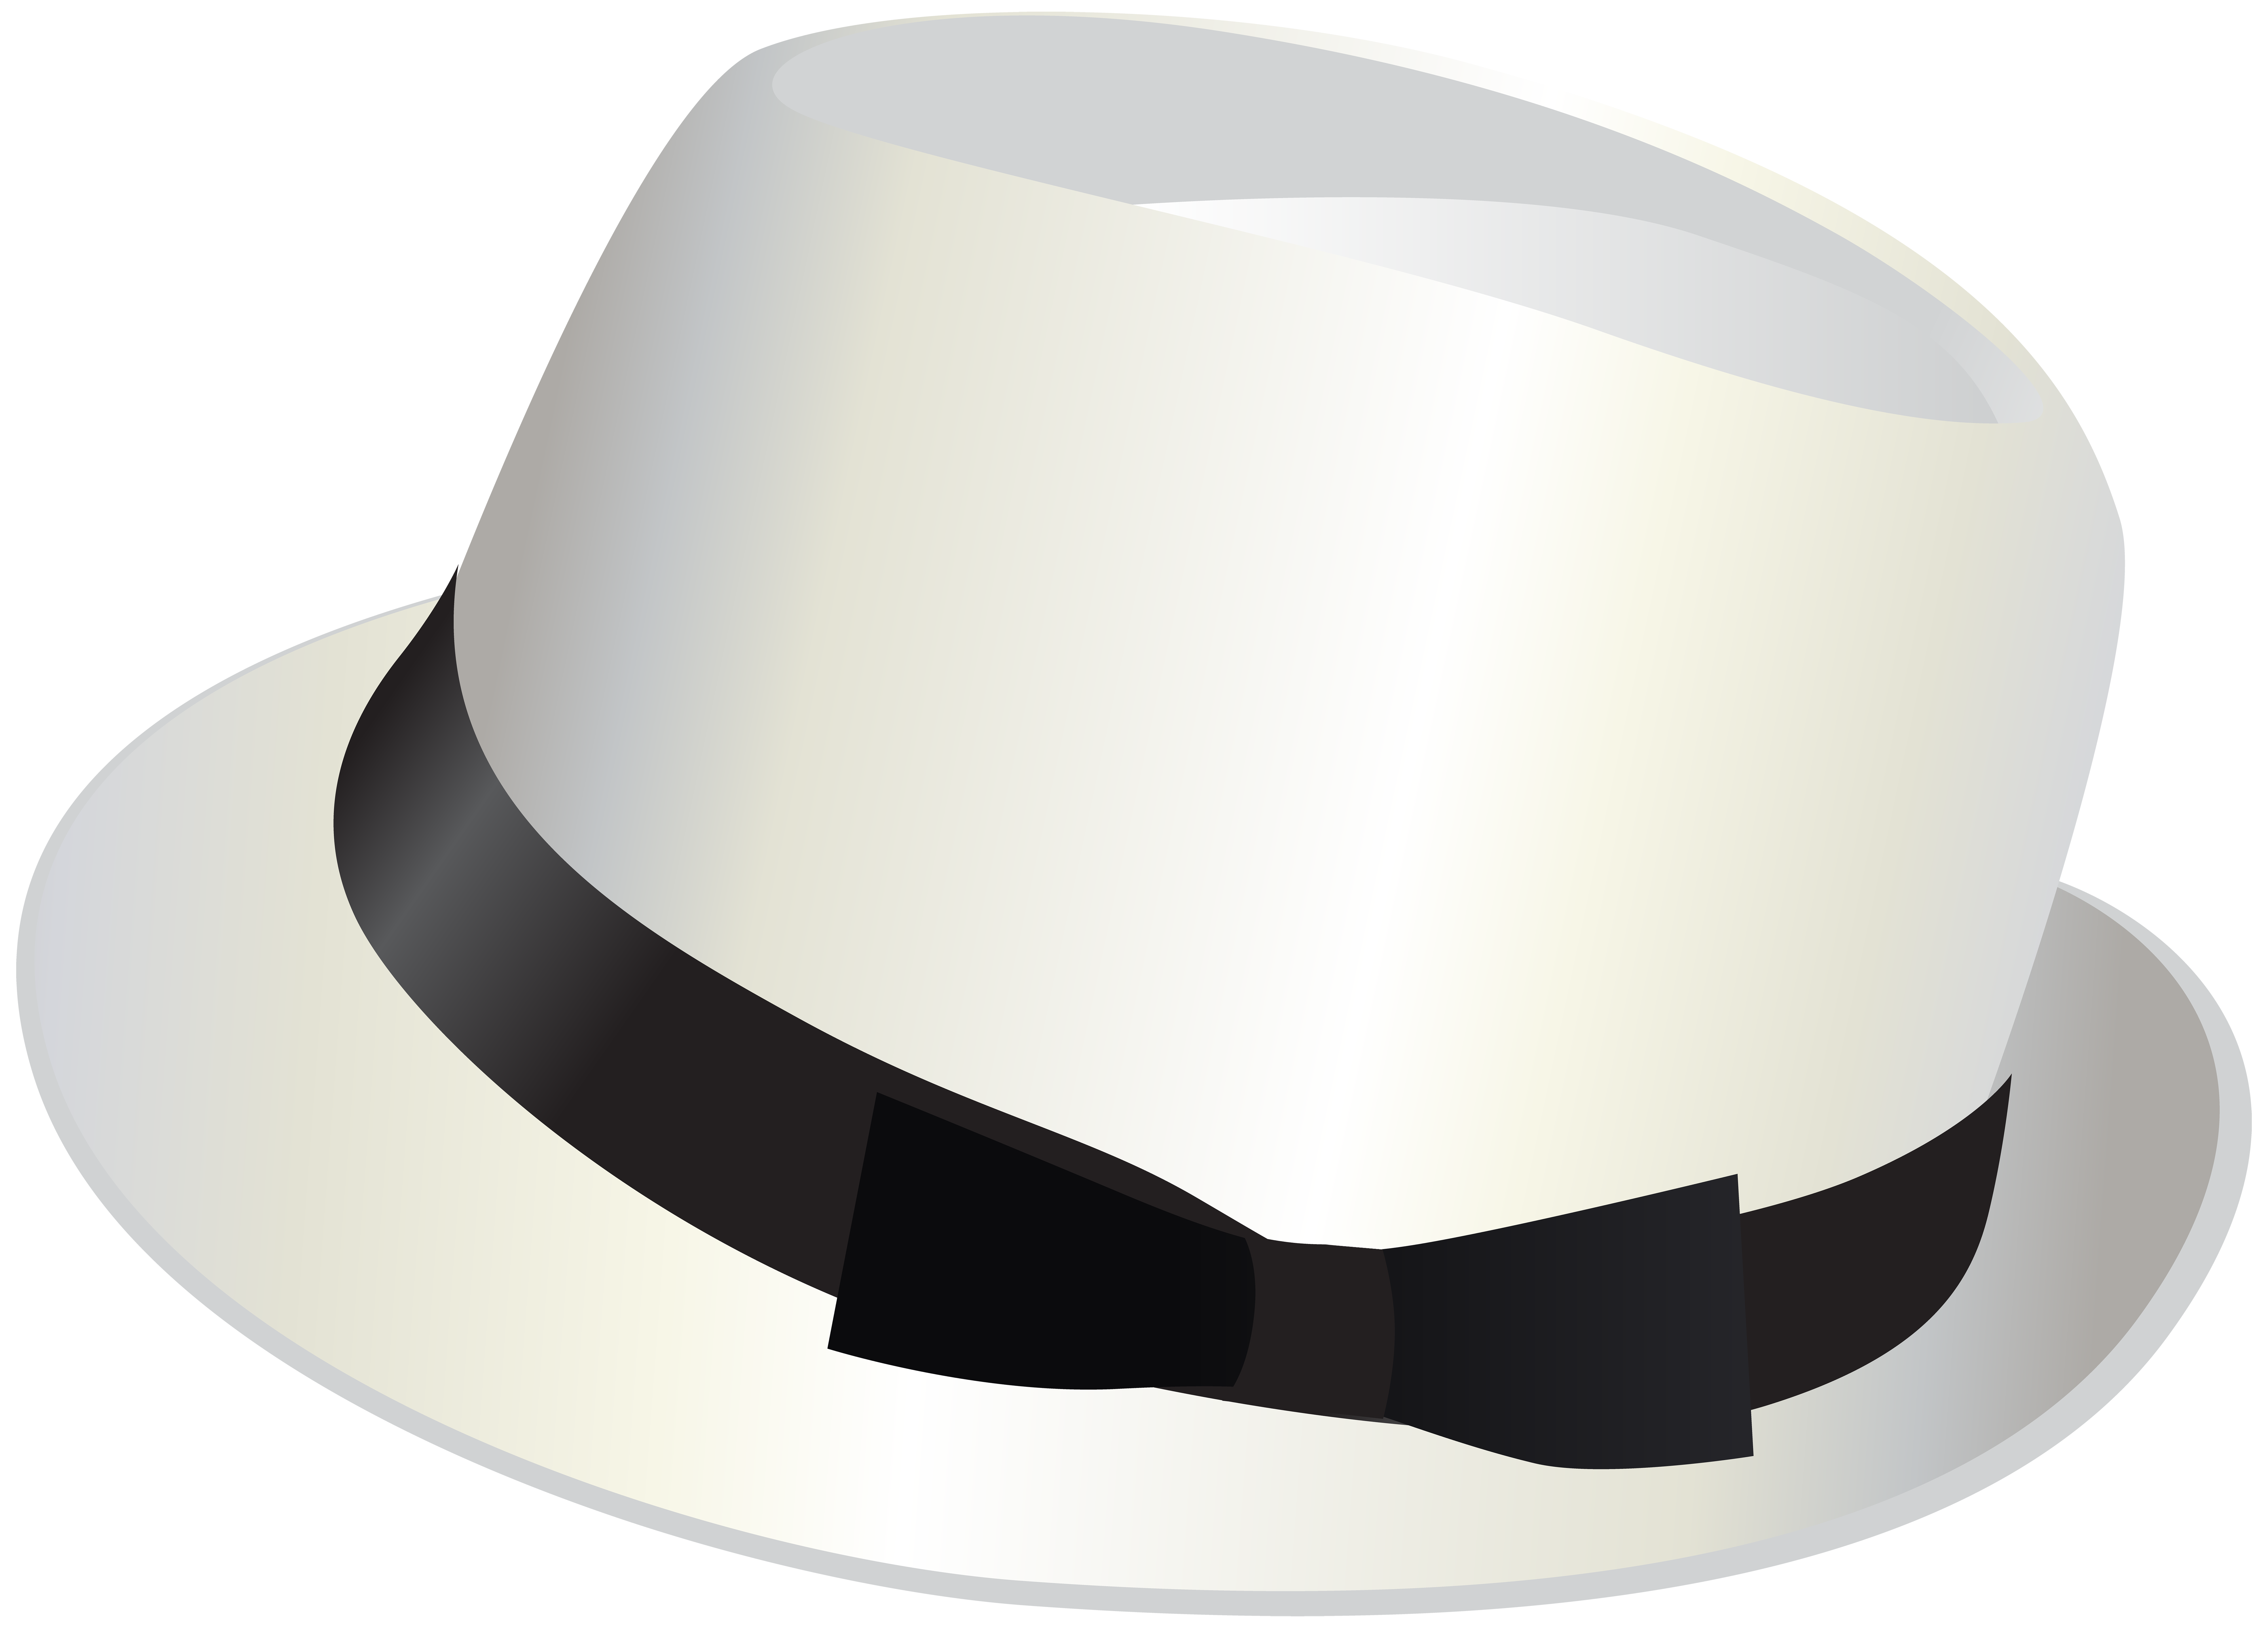 Hat ihn. Шляпа. Цилиндр (головной убор). Шляпа цилиндр белая. Шляпа на белом фоне.